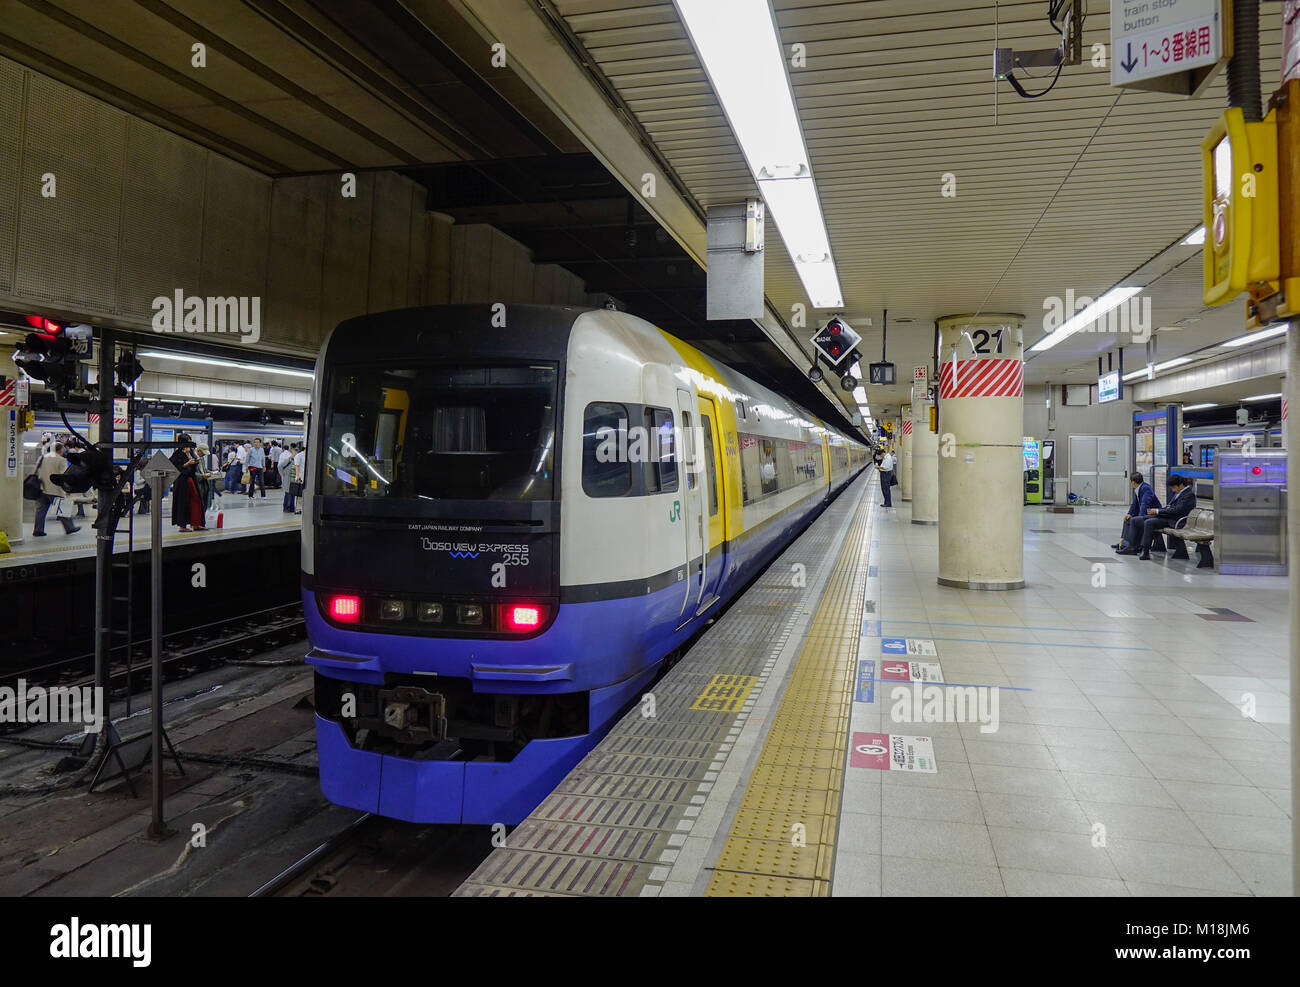 Tokyo, Giappone - 29 set 2017. Un treno locale fermarsi presso la stazione della metropolitana di Tokyo, Giappone. Il trasporto ferroviario in Giappone è uno dei principali mezzi di trasporto di passeggeri. Foto Stock